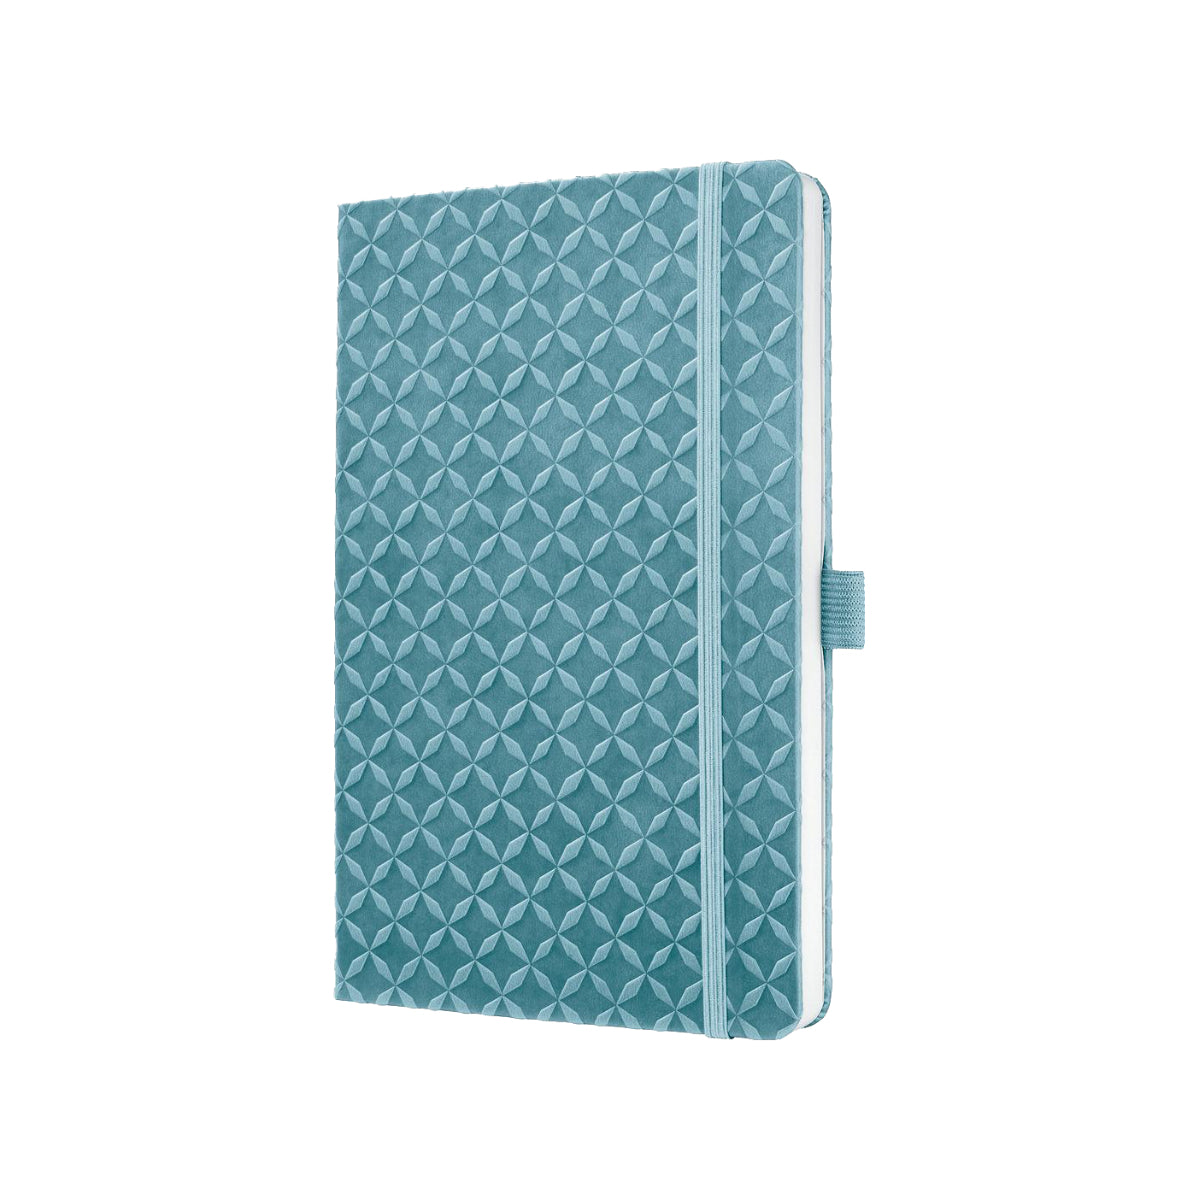 Sigel Notebook JOLIE A5, Hardcover, Lined, Sky Blue